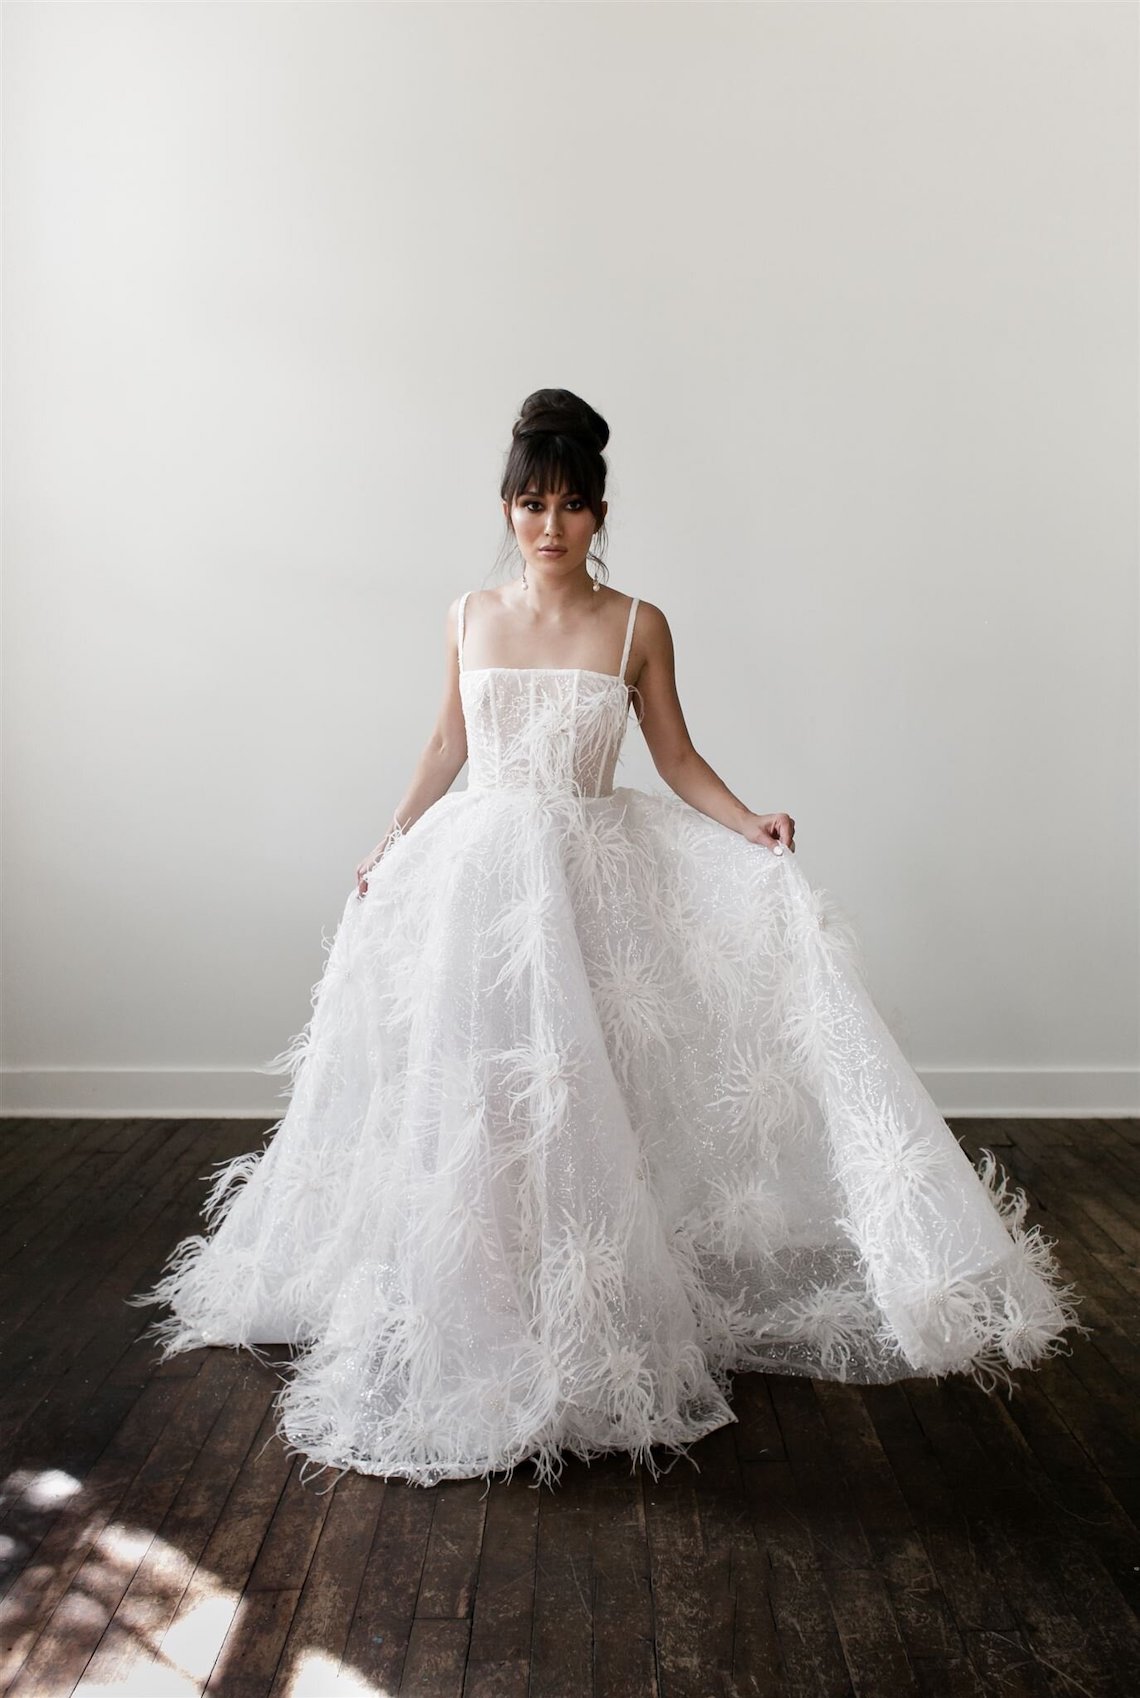 The Reign Feather Wedding Dress by Varca Bridal Fashion forward Ballgowns for the Alternative Cool Bride 2 - 20 chiếc váy dạ hội tuyên bố dành cho cô dâu sành điệu, thời trang